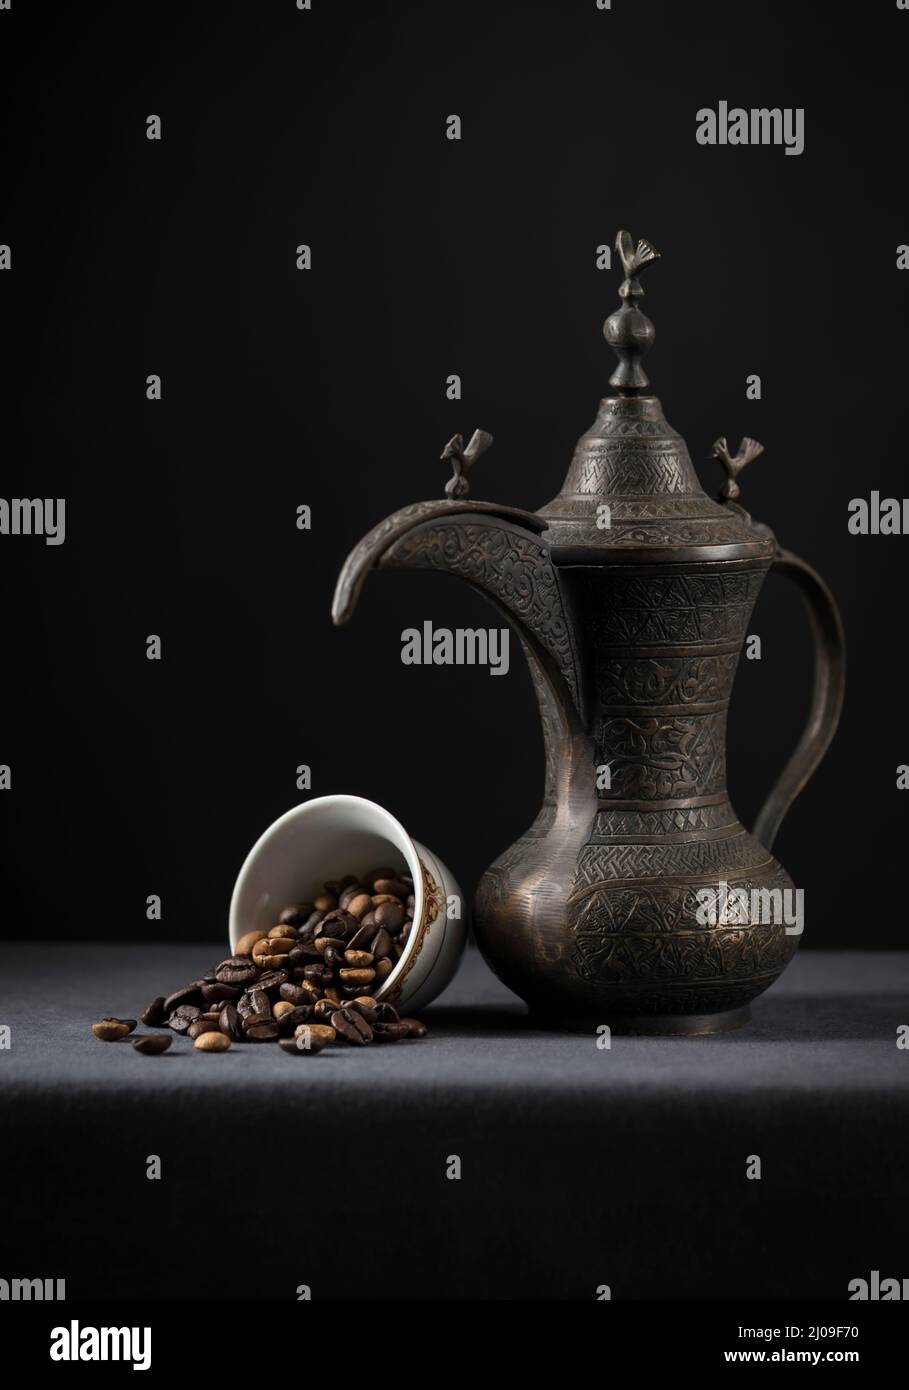 Antike arabische Kaffeekocher mit gerösteten Kaffeebohnen. Kaffeebohnen werden aus einer Tasse ausgespült. Stock-Foto. Stockfoto